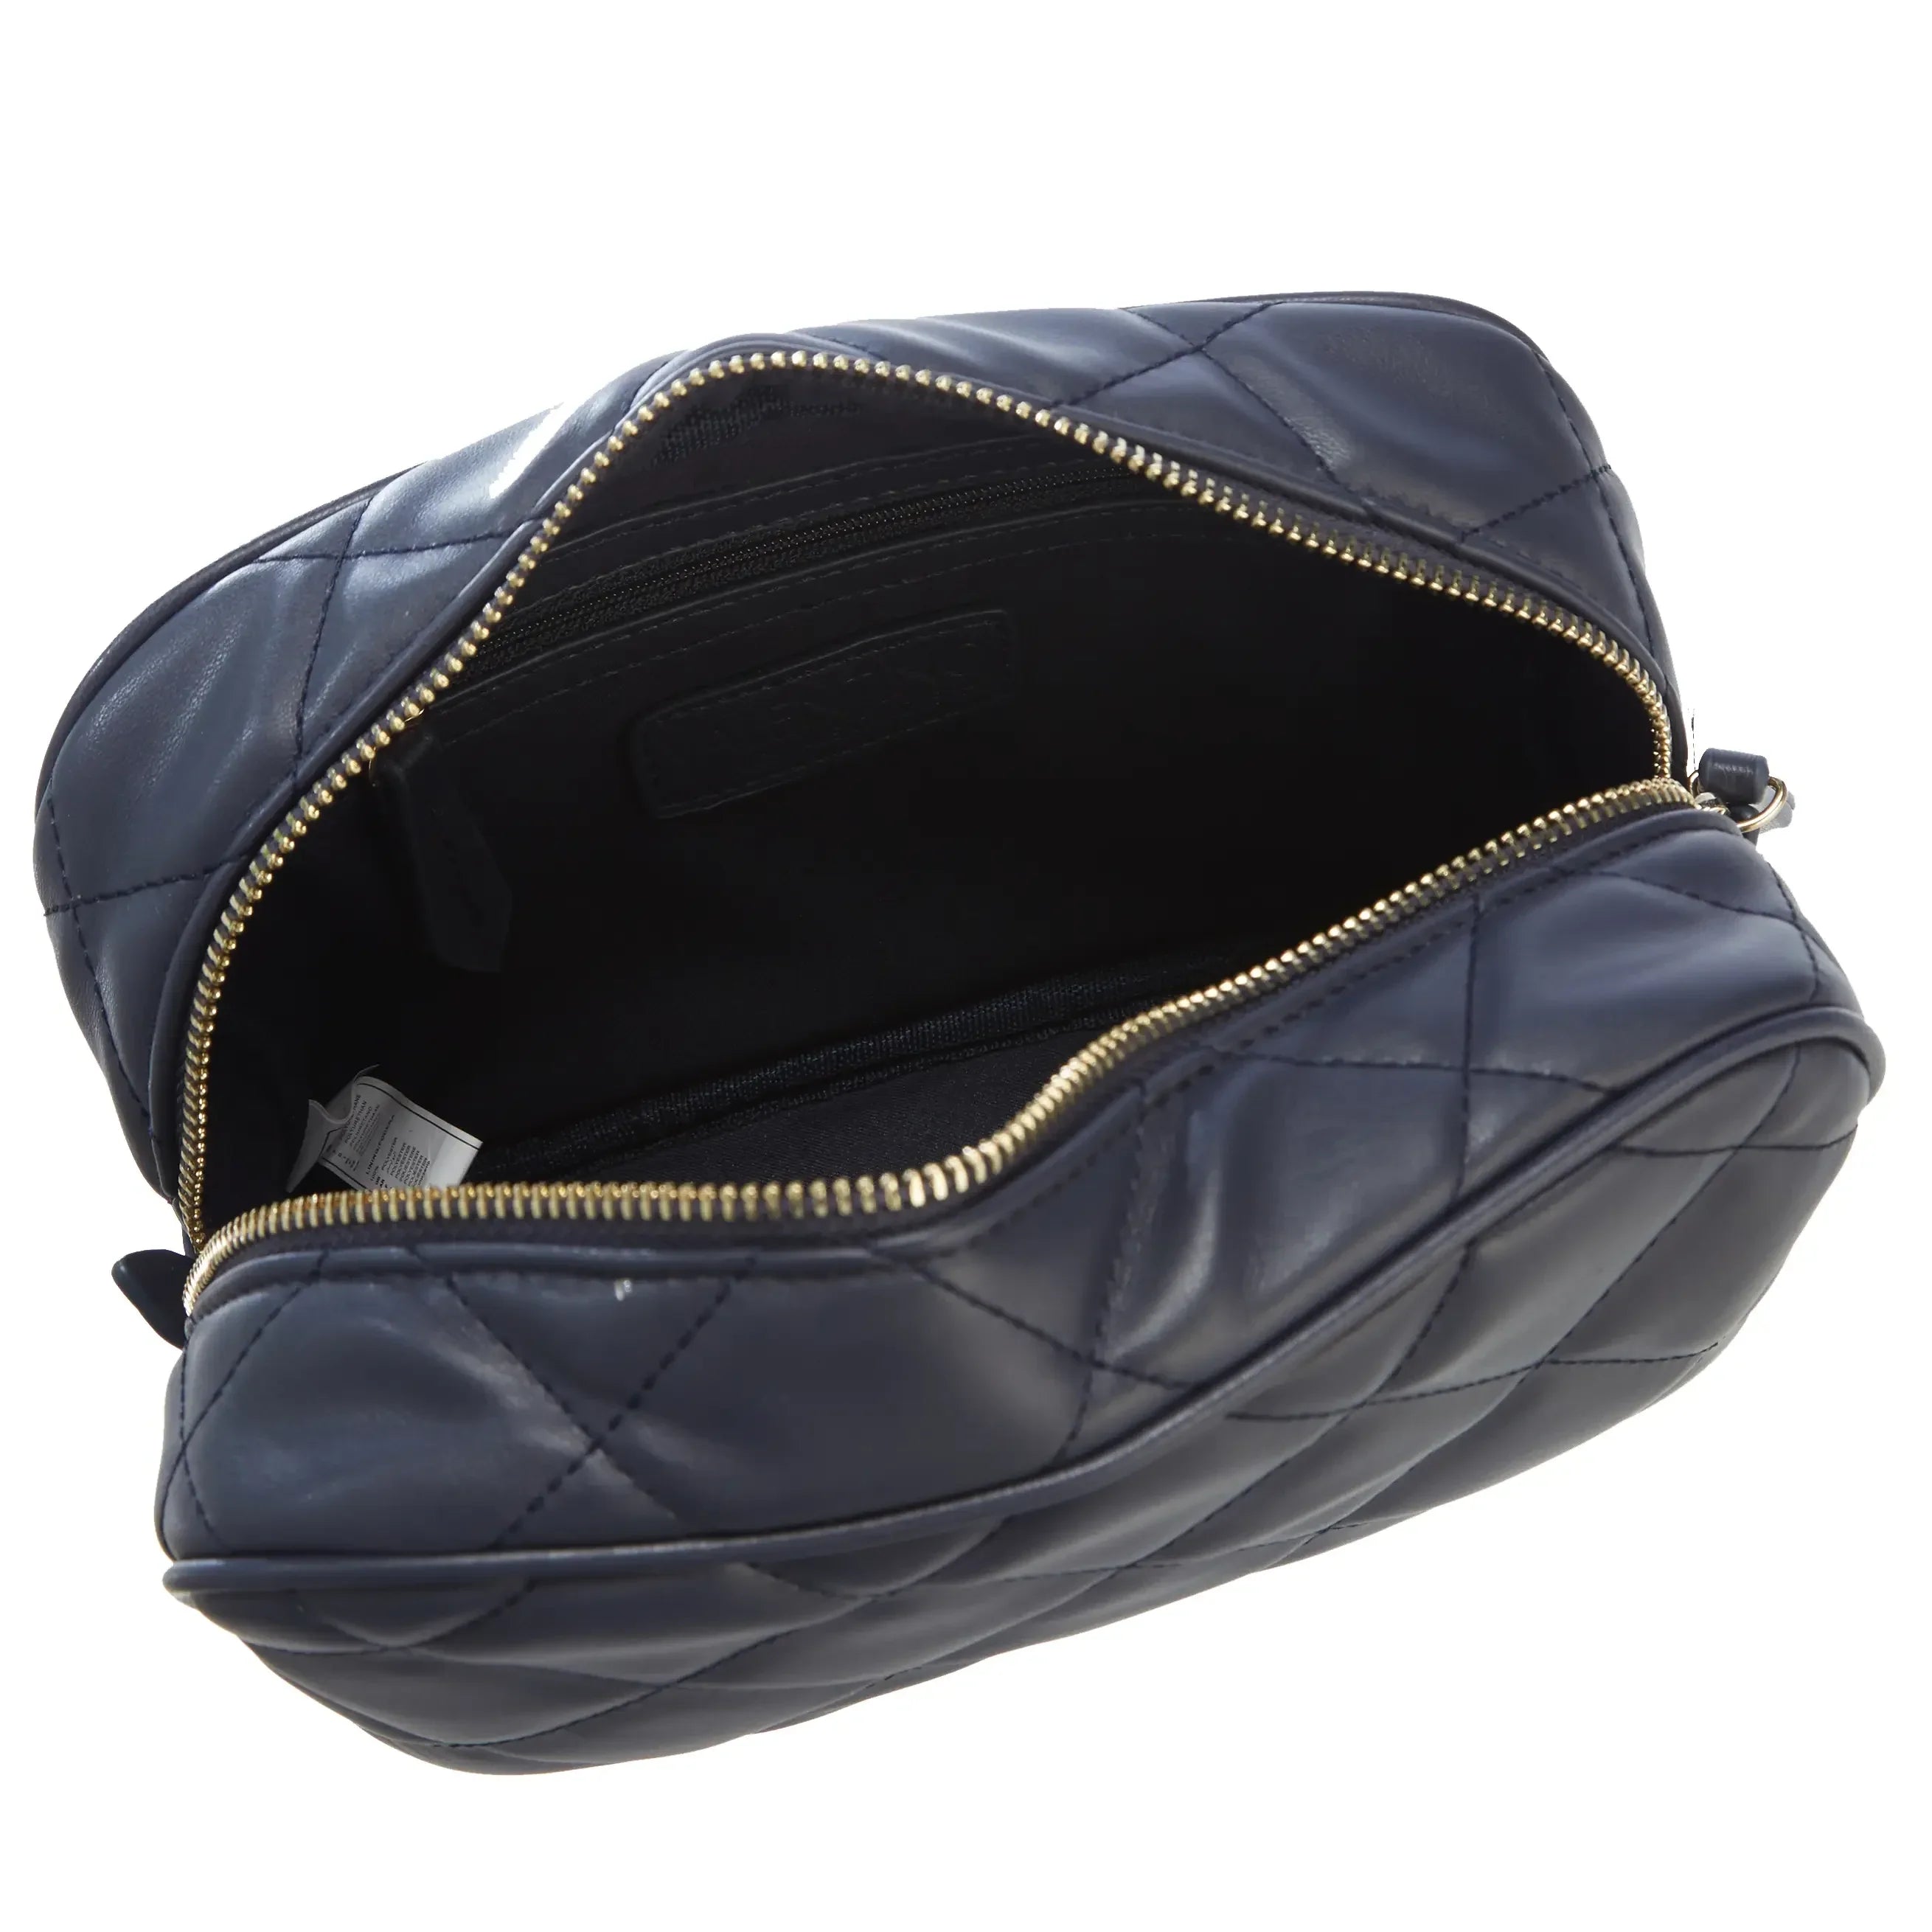 Valentino Bags Ocarina cosmetic bag 22 cm - Nero